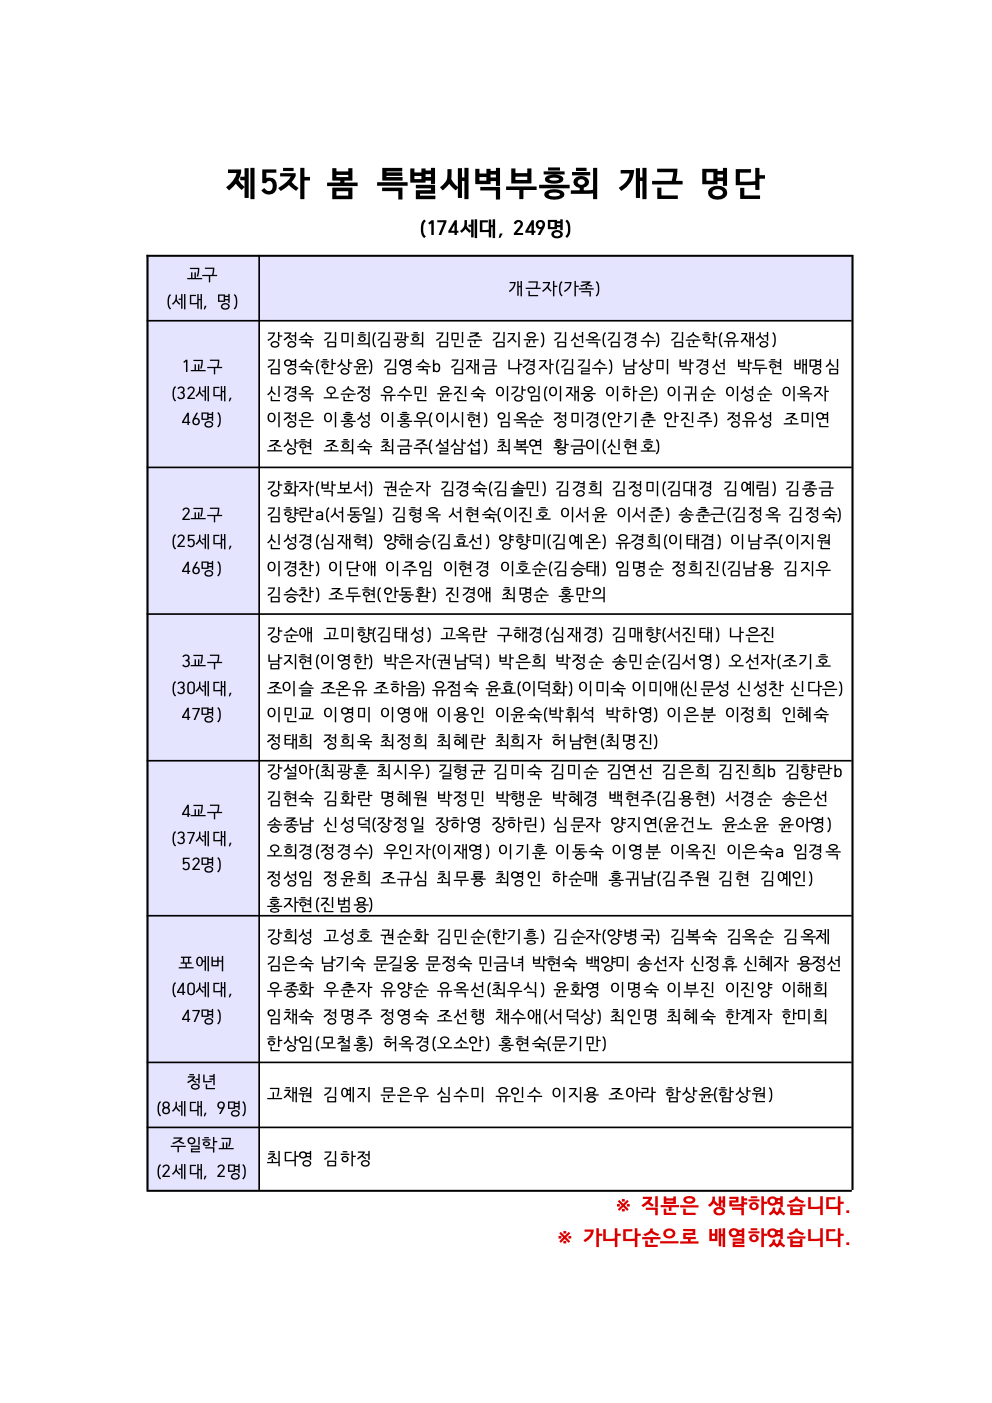 제5차 봄 특별새벽부흥회 개근 명단_수정3.png